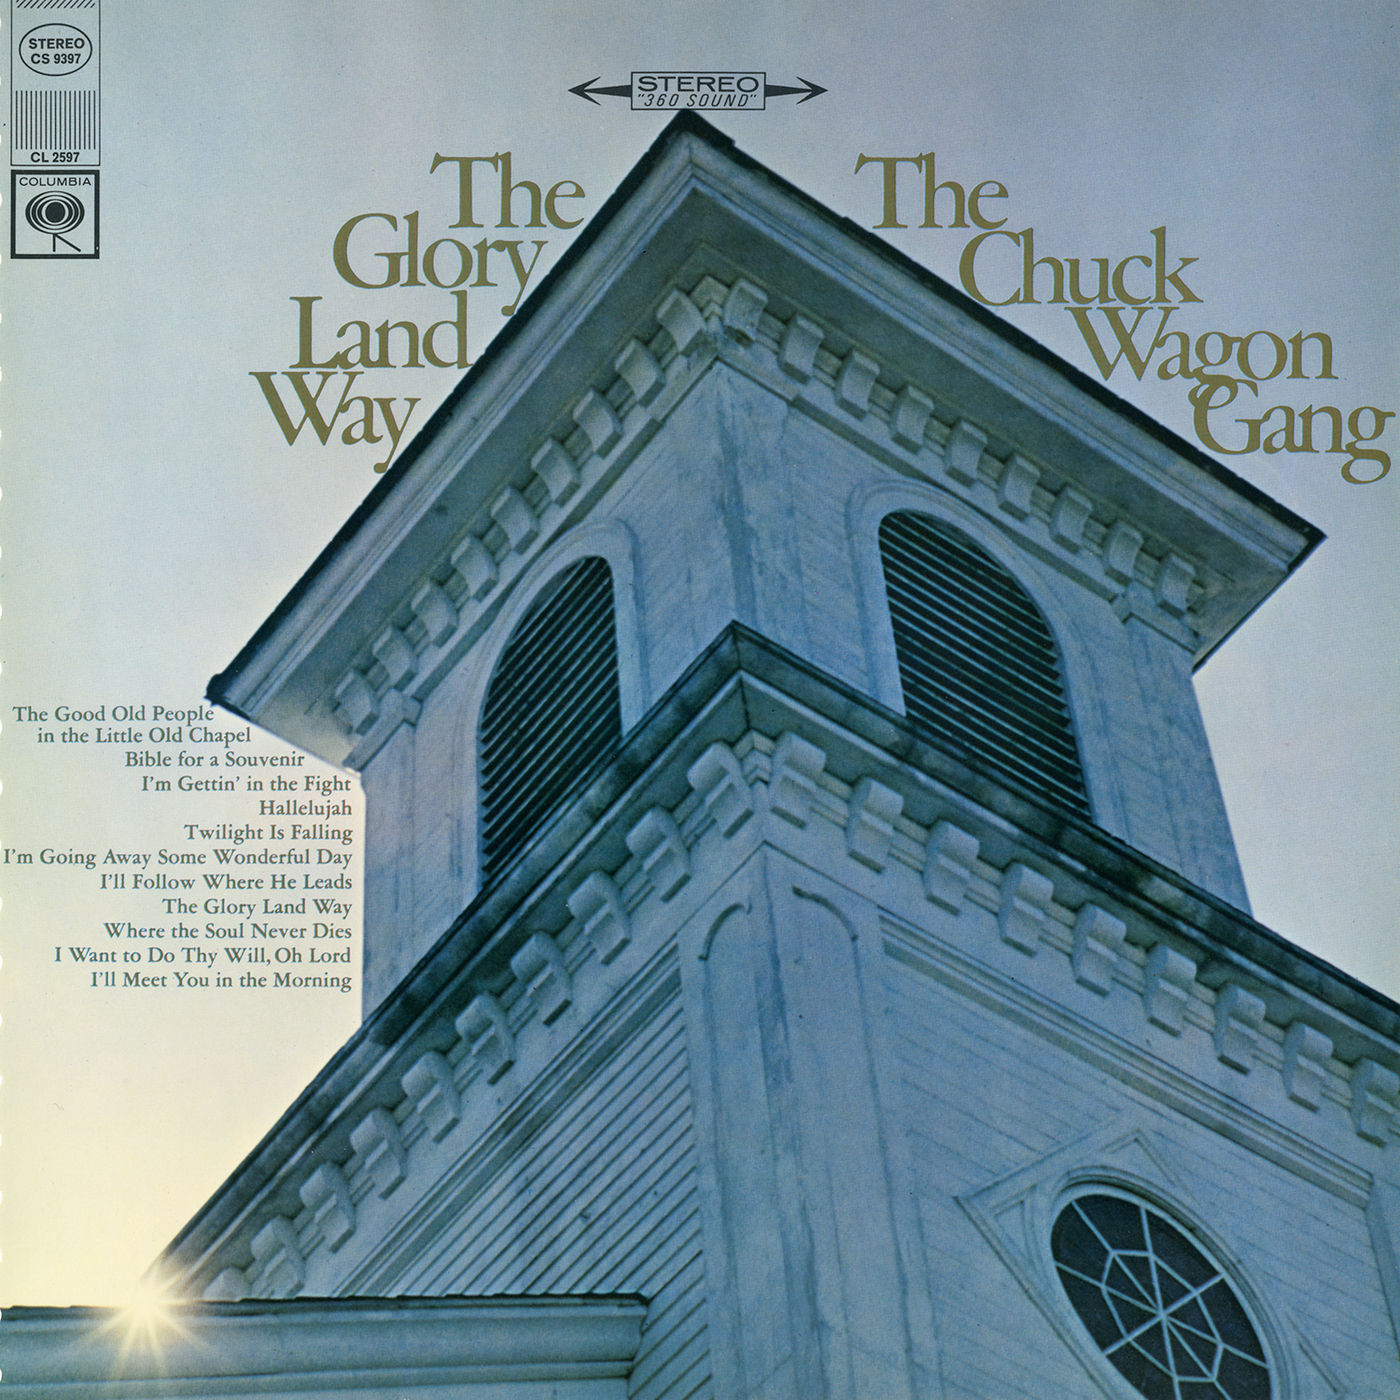 The Chuck Wagon Gang – The Glory Land Way